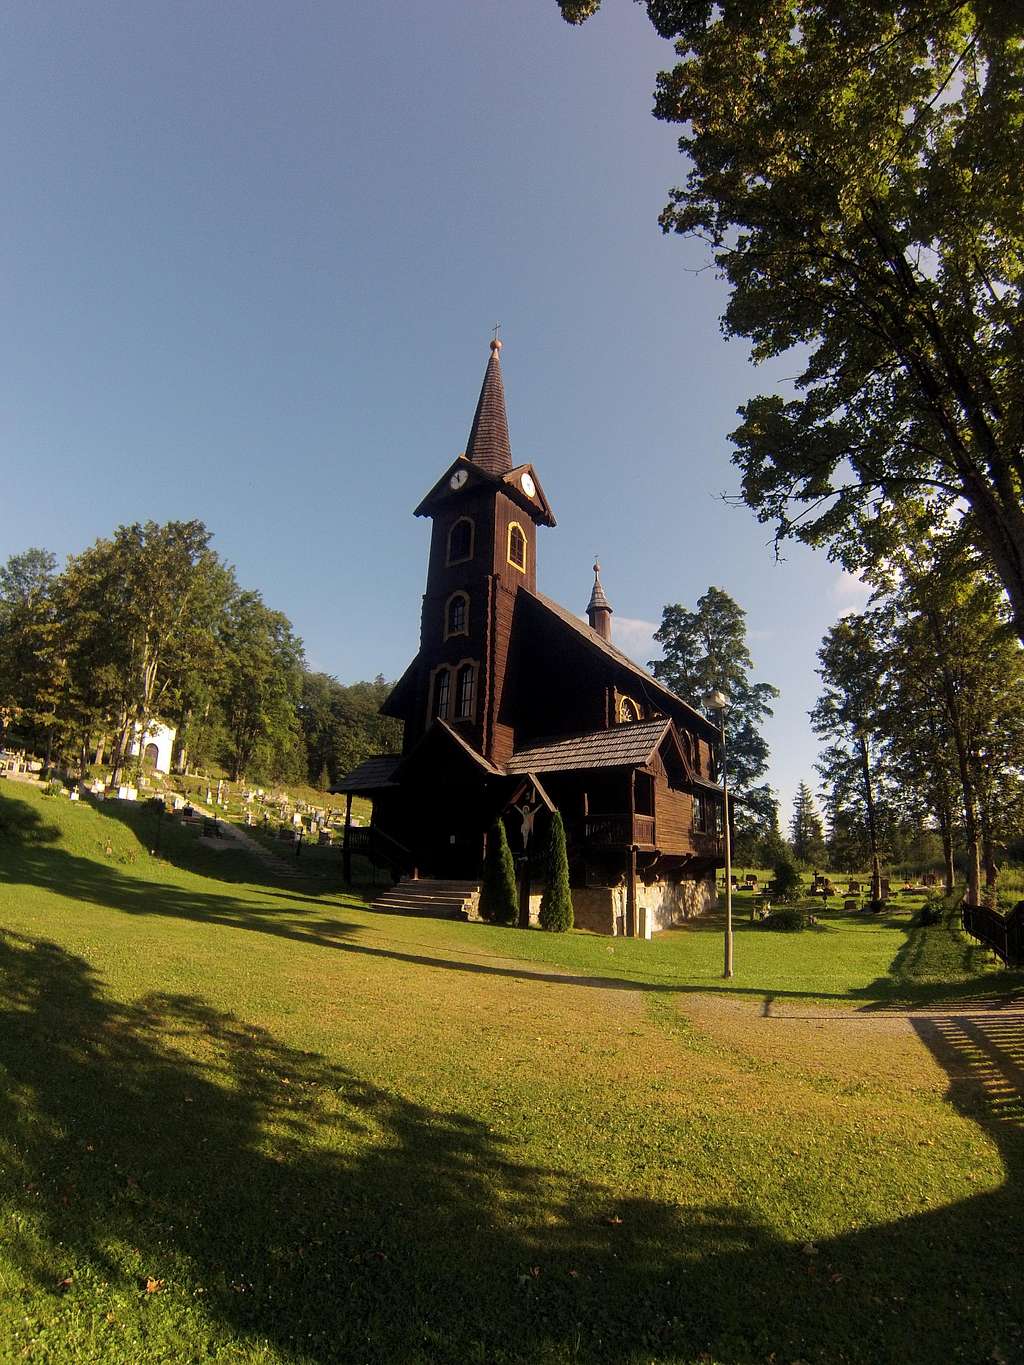 Tatranska Javorina wooden church